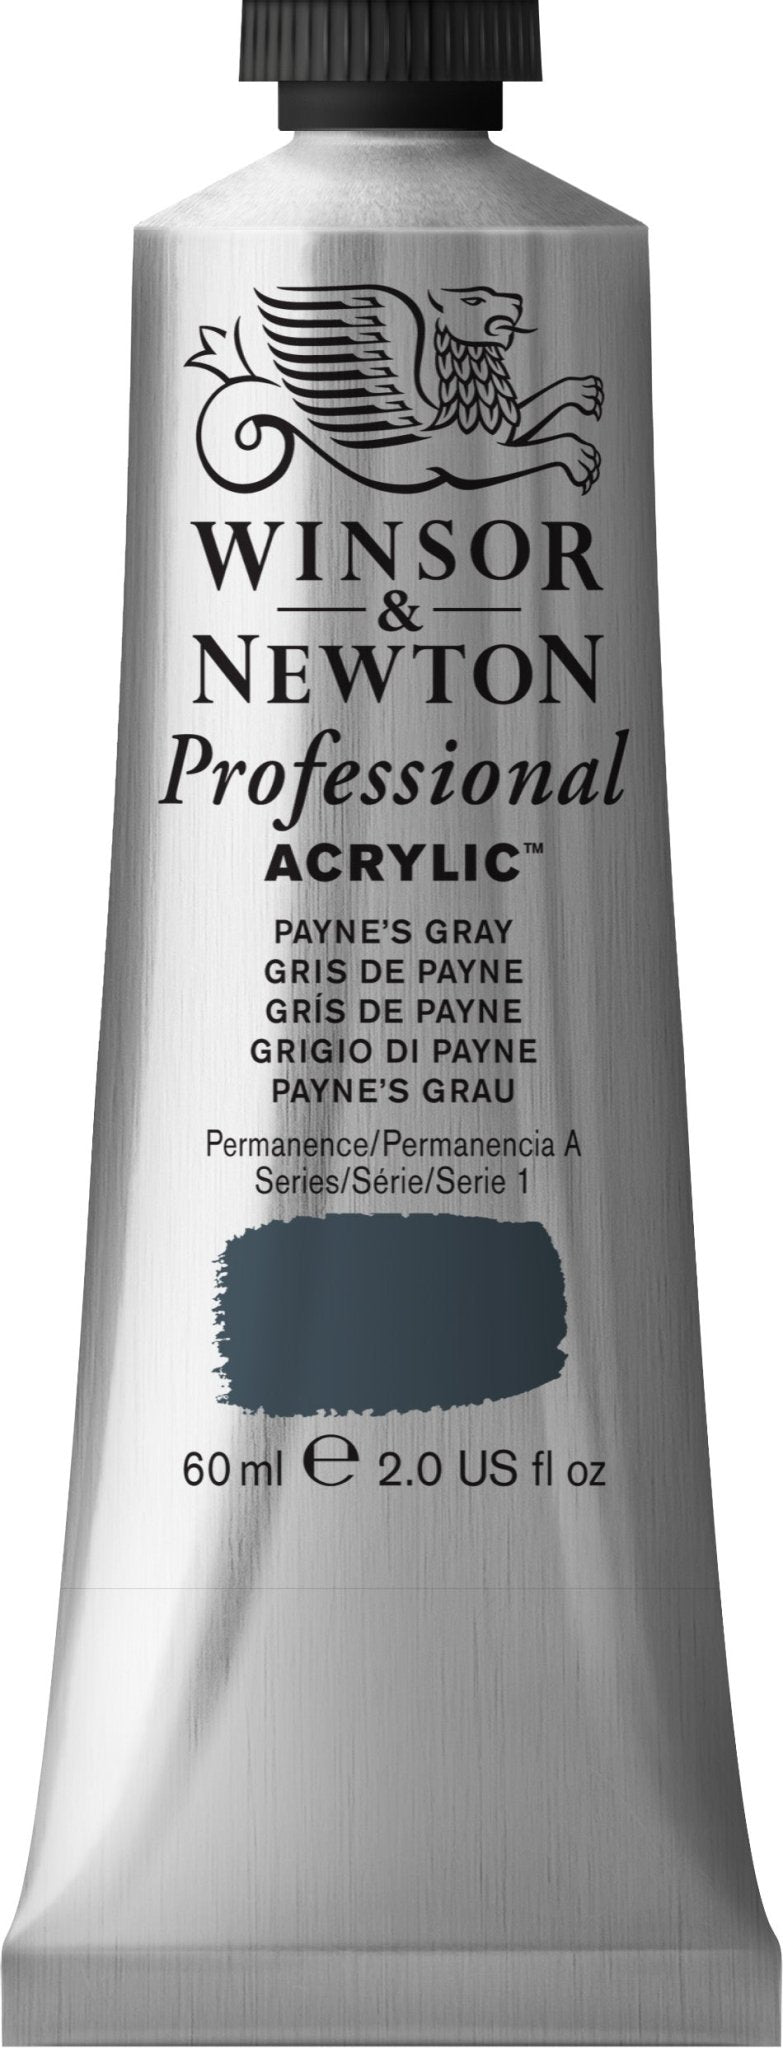 W & N Professional Acrylic 60ml Payne's Grey - theartshop.com.au